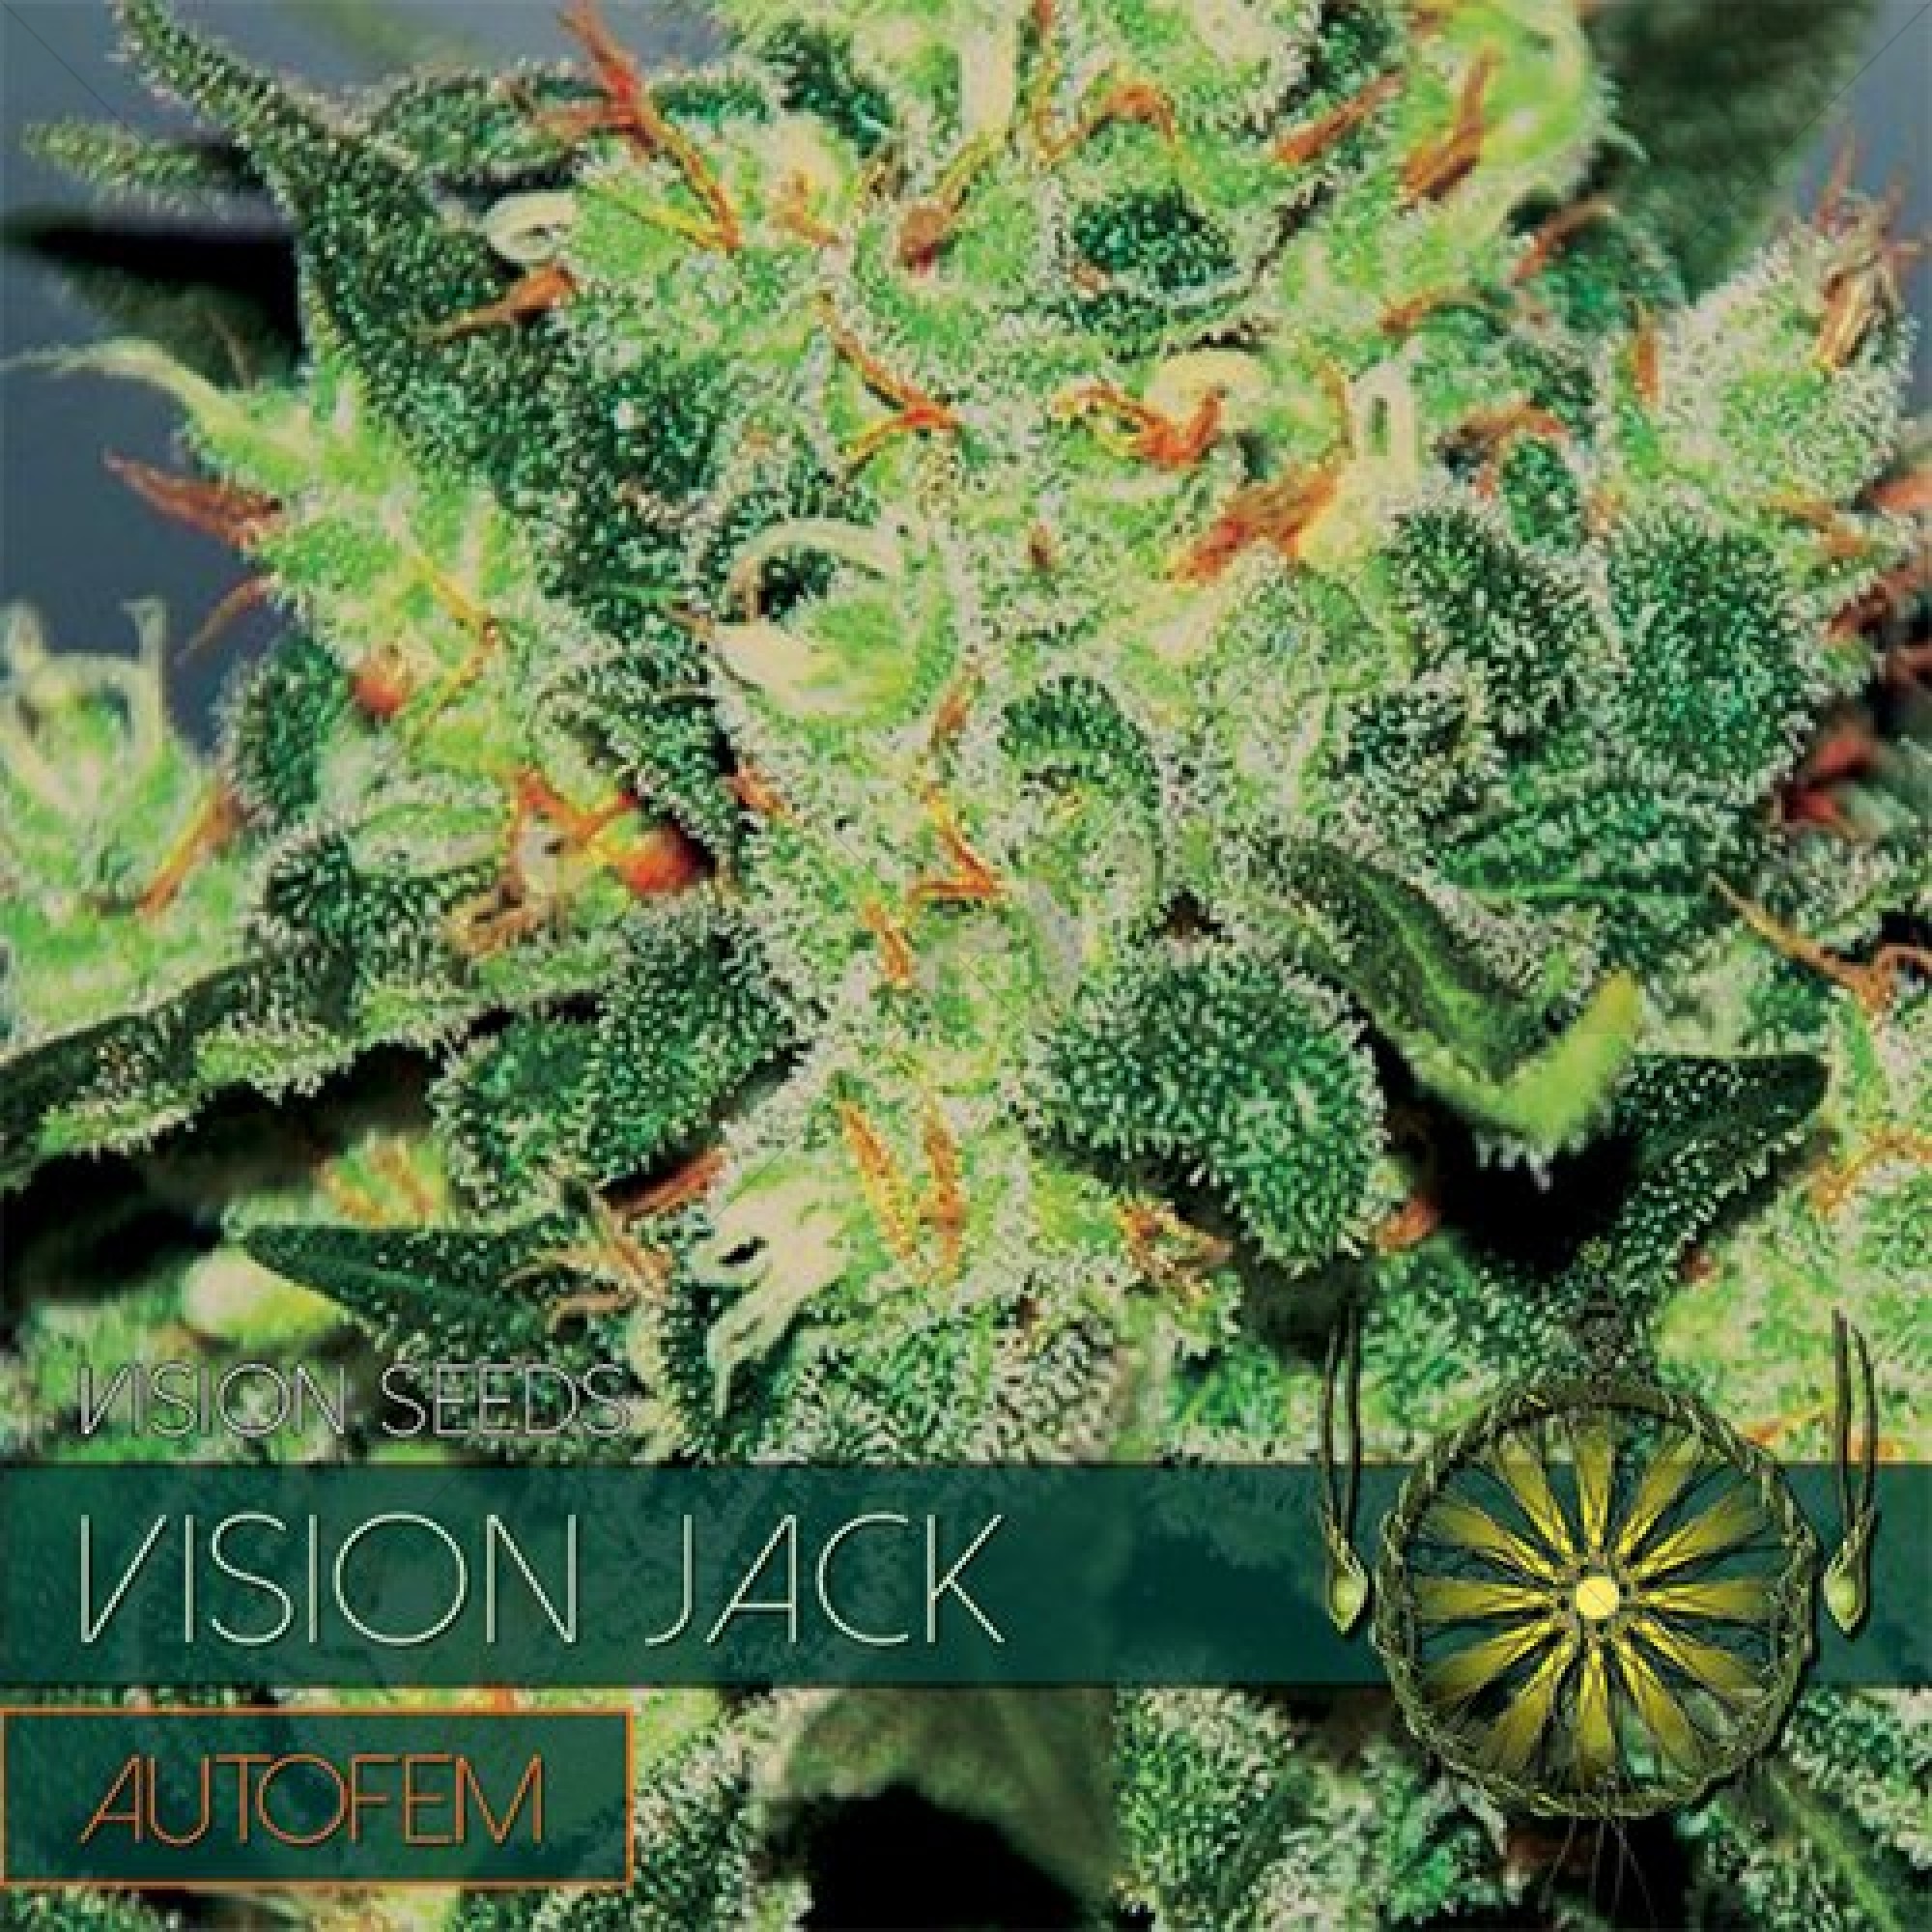 Vision Jack Auto (Vision Seeds) gefeminiseerd